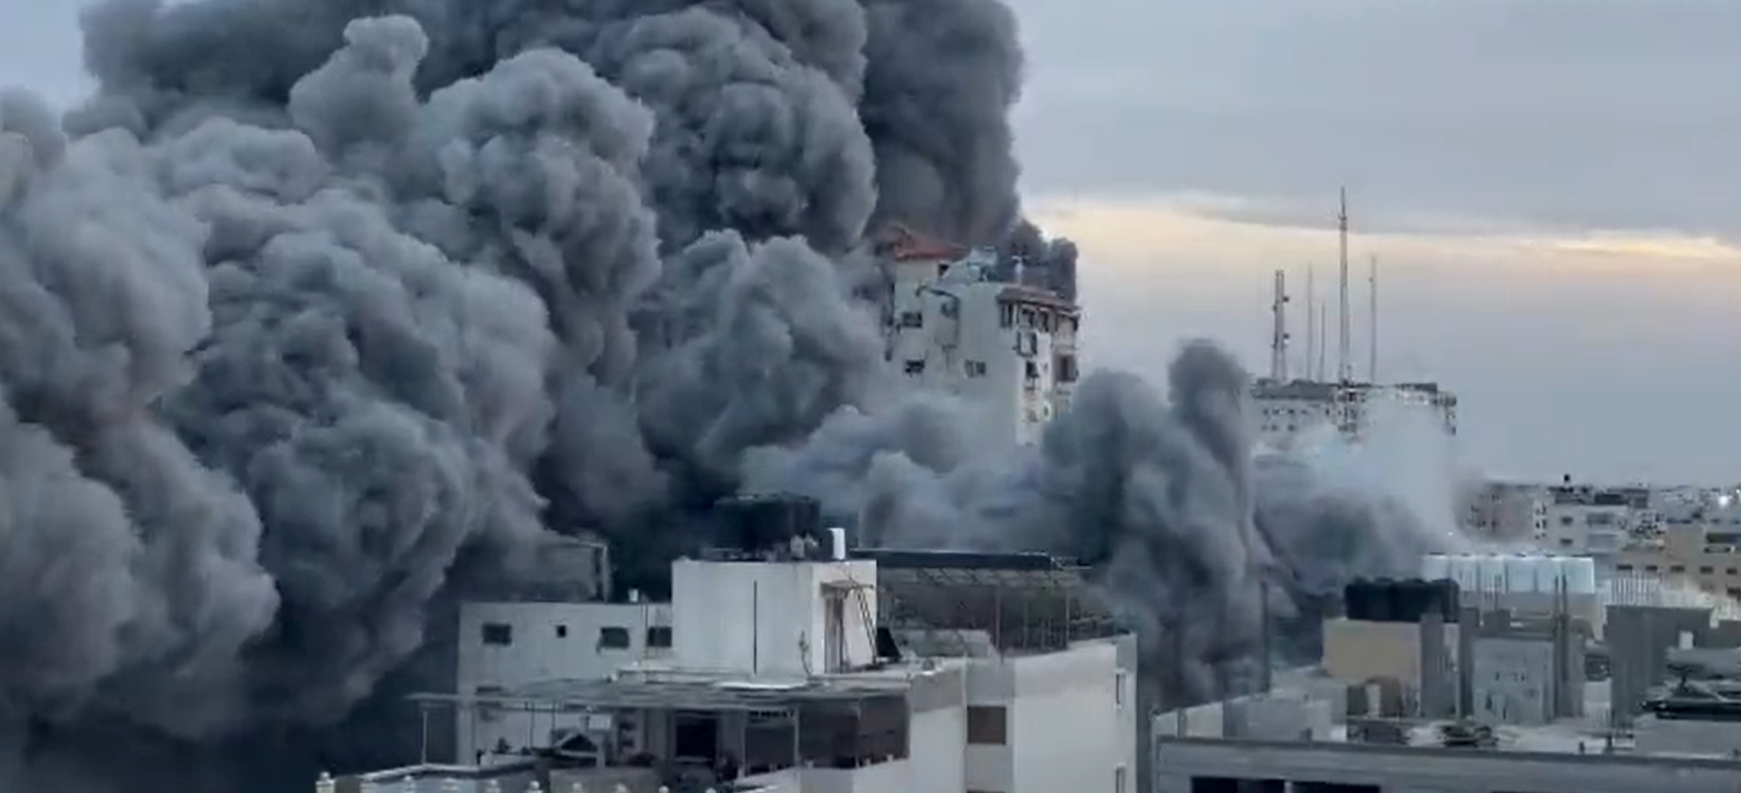 Impactante: En VIDEO quedó registrado el momento cuando misil israelí derrumbó edificio en Gaza